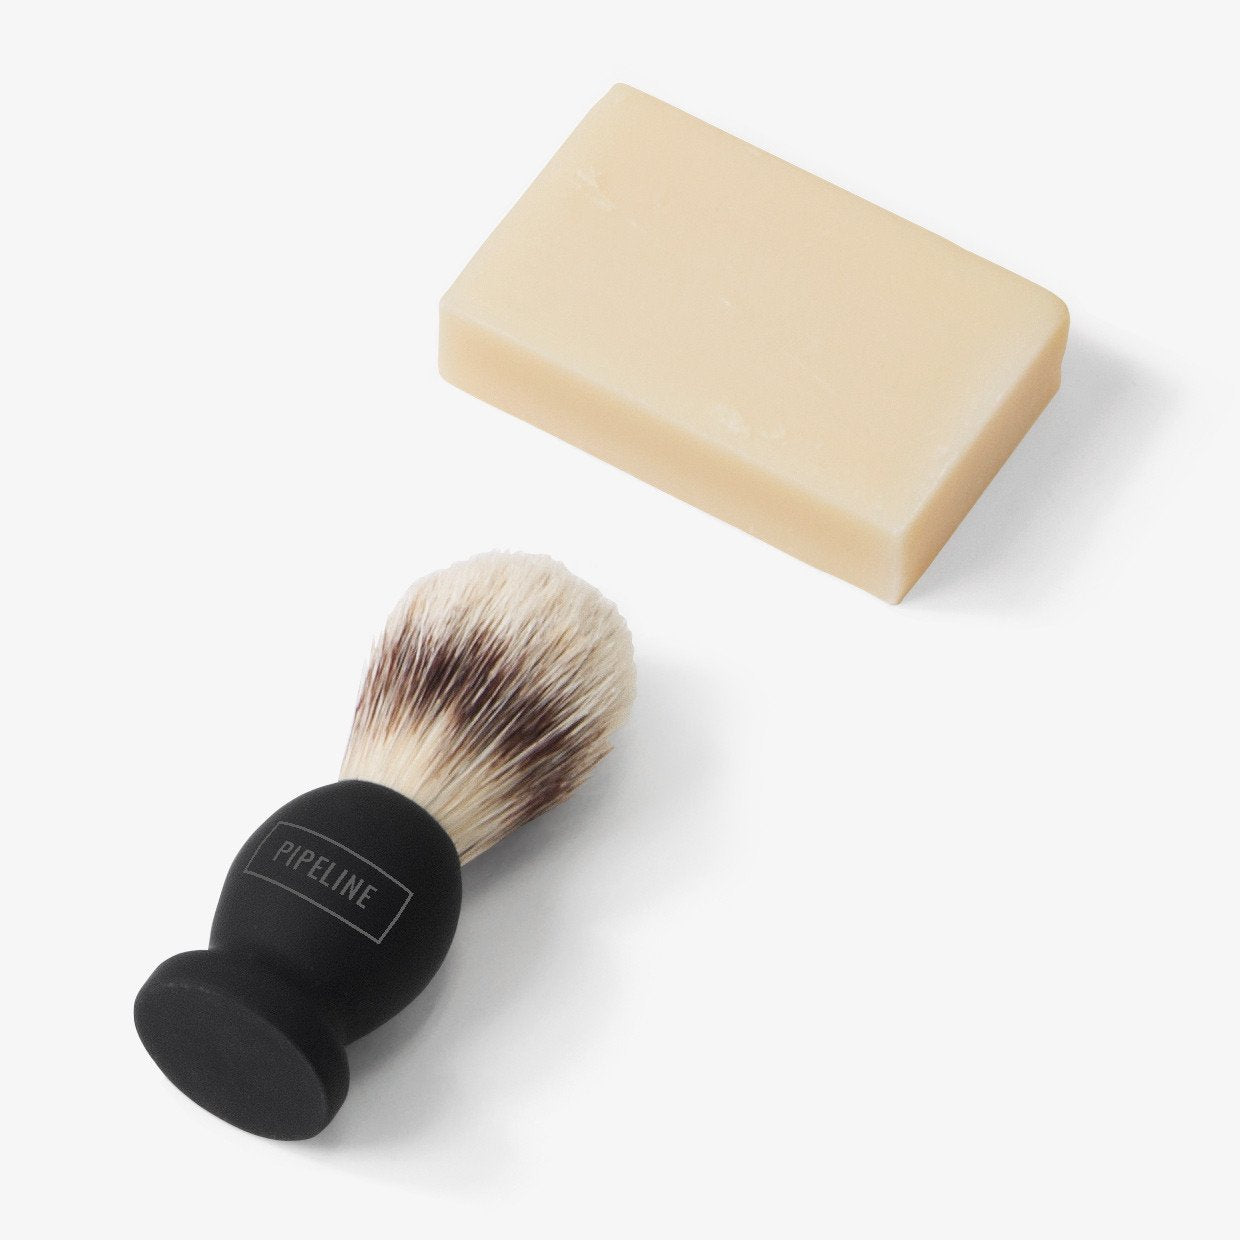 Deluxea Shaving Kit